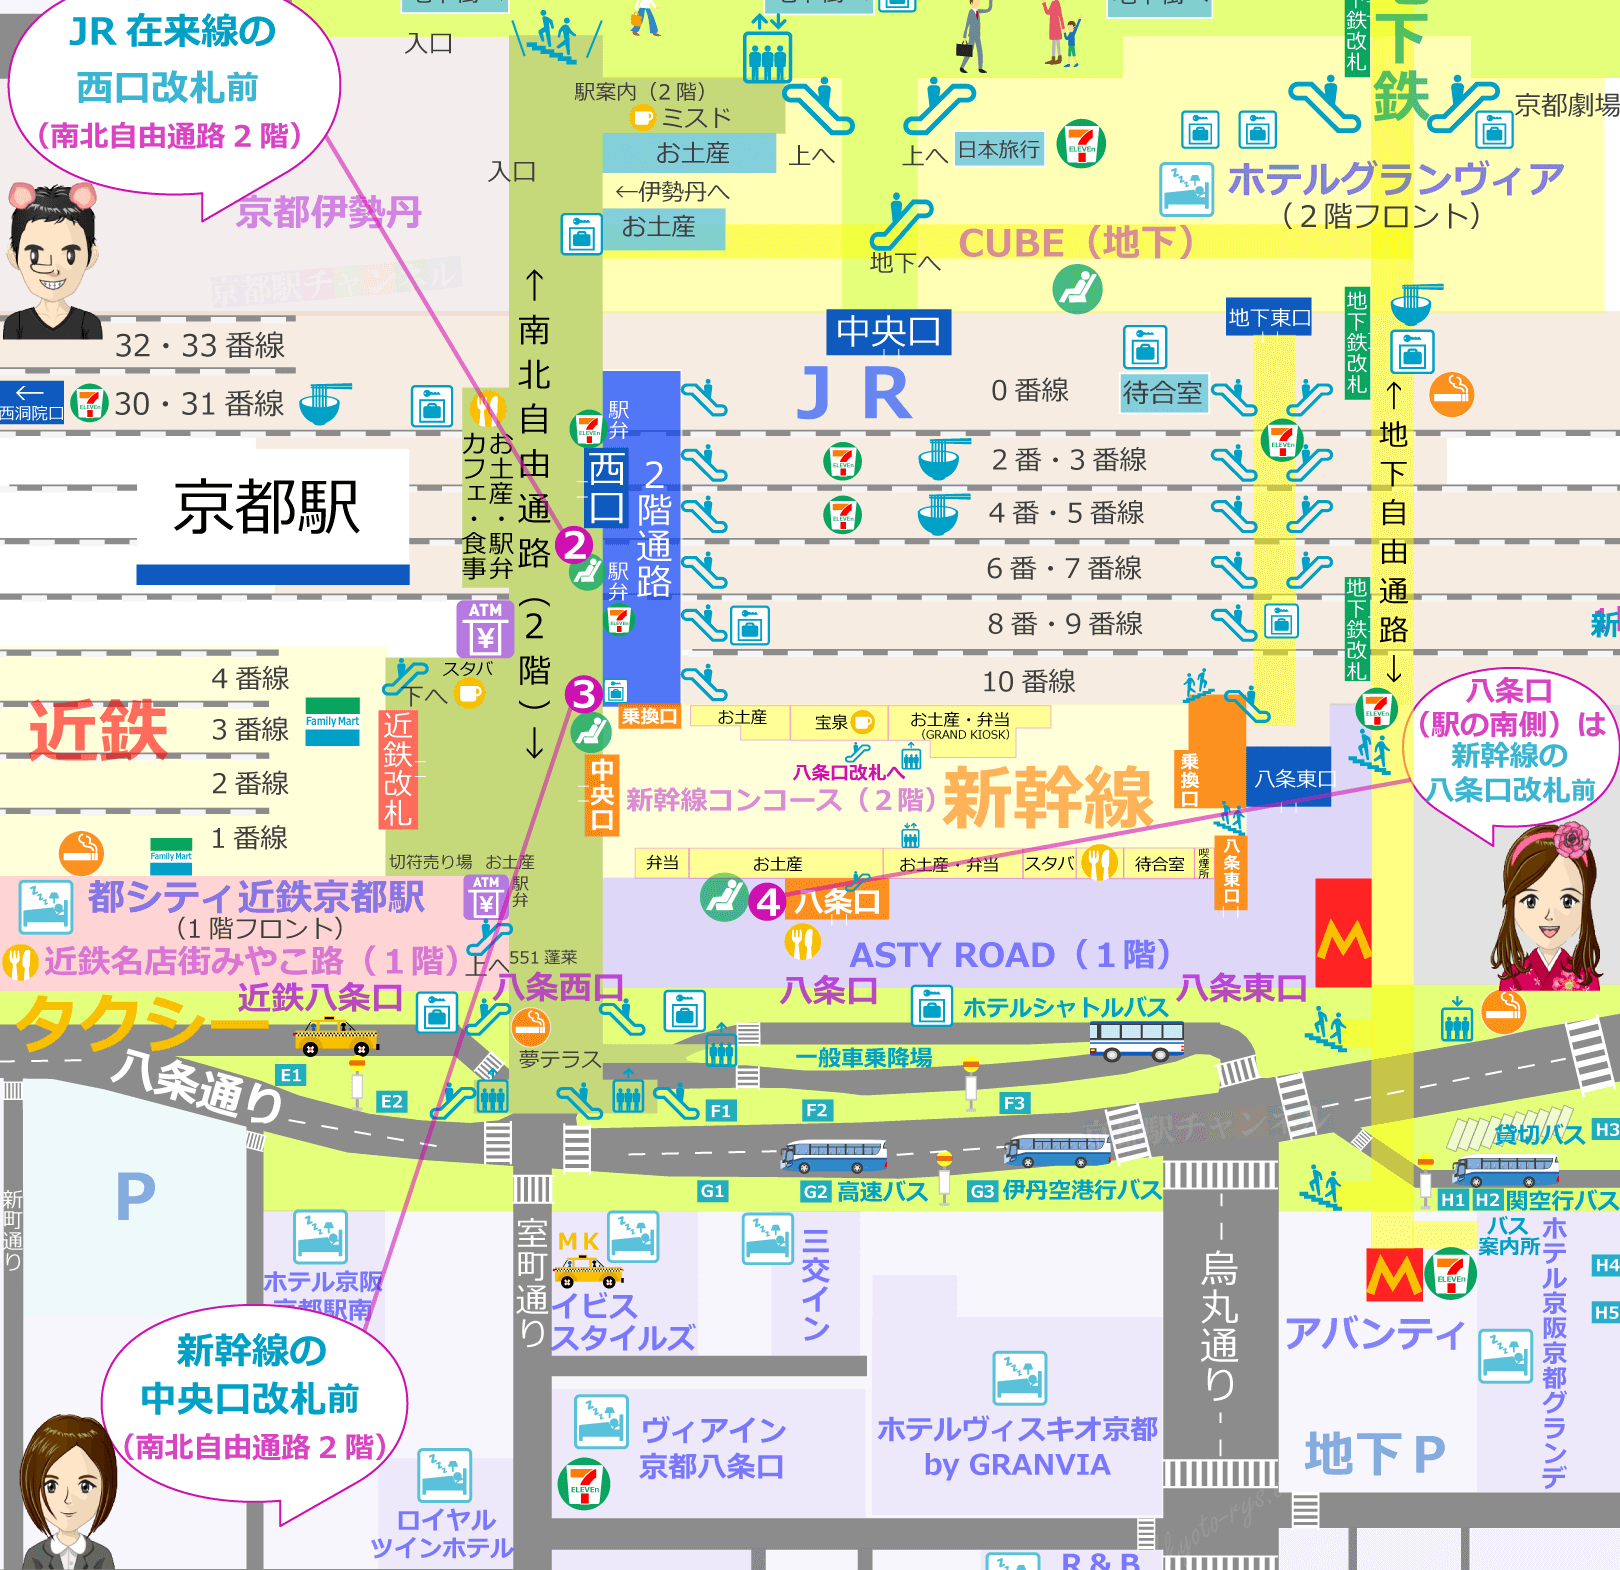 京都駅八条口と西口の切符売場の地図